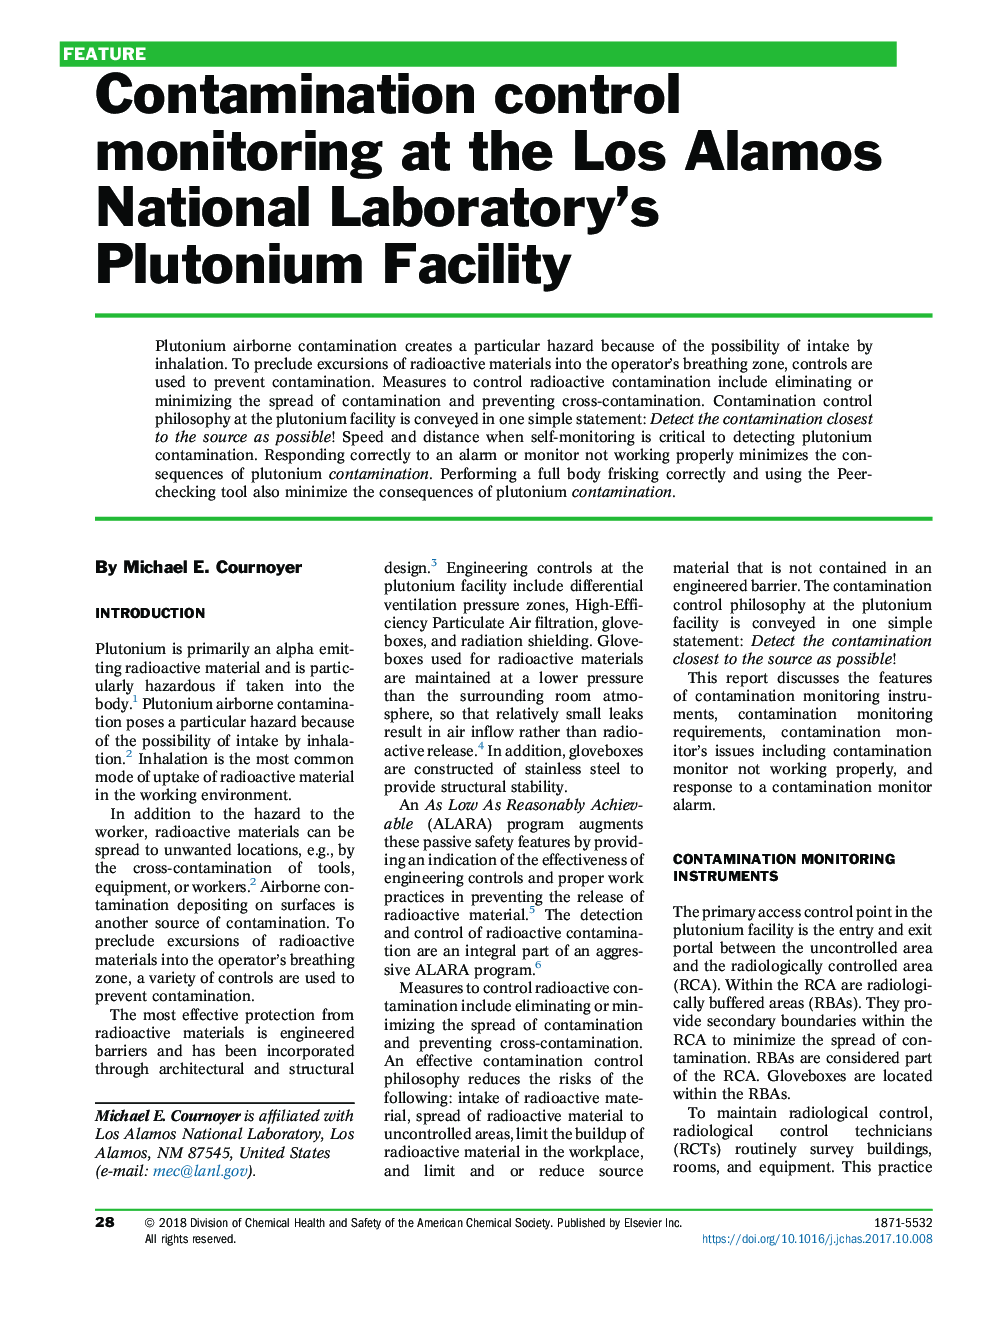 Contamination control monitoring at the Los Alamos National Laboratory's Plutonium Facility